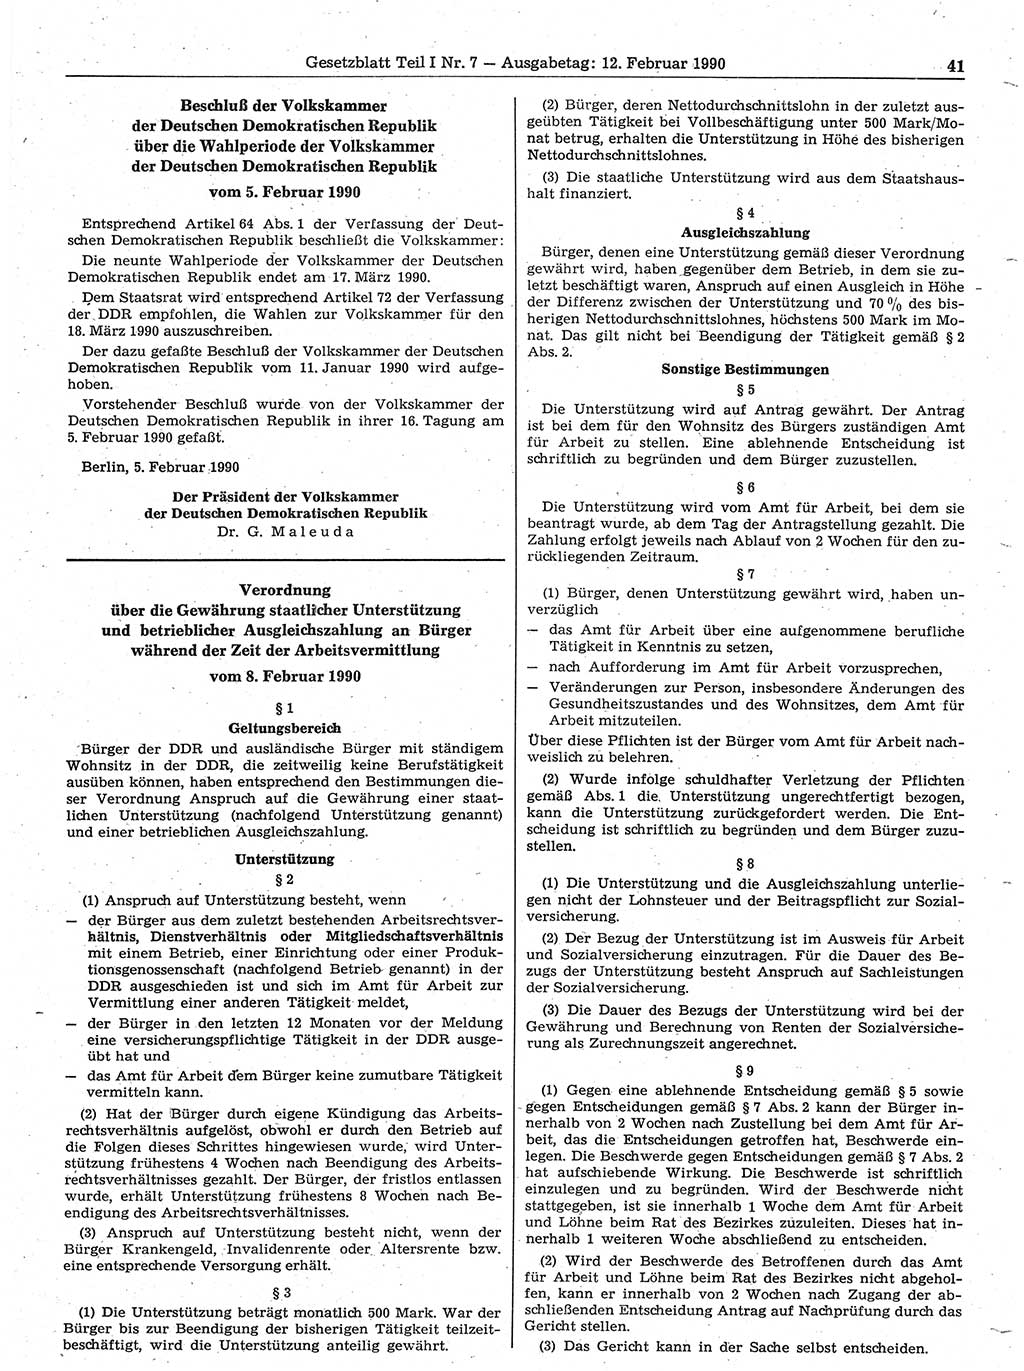 Gesetzblatt (GBl.) der Deutschen Demokratischen Republik (DDR) Teil Ⅰ 1990, Seite 41 (GBl. DDR Ⅰ 1990, S. 41)